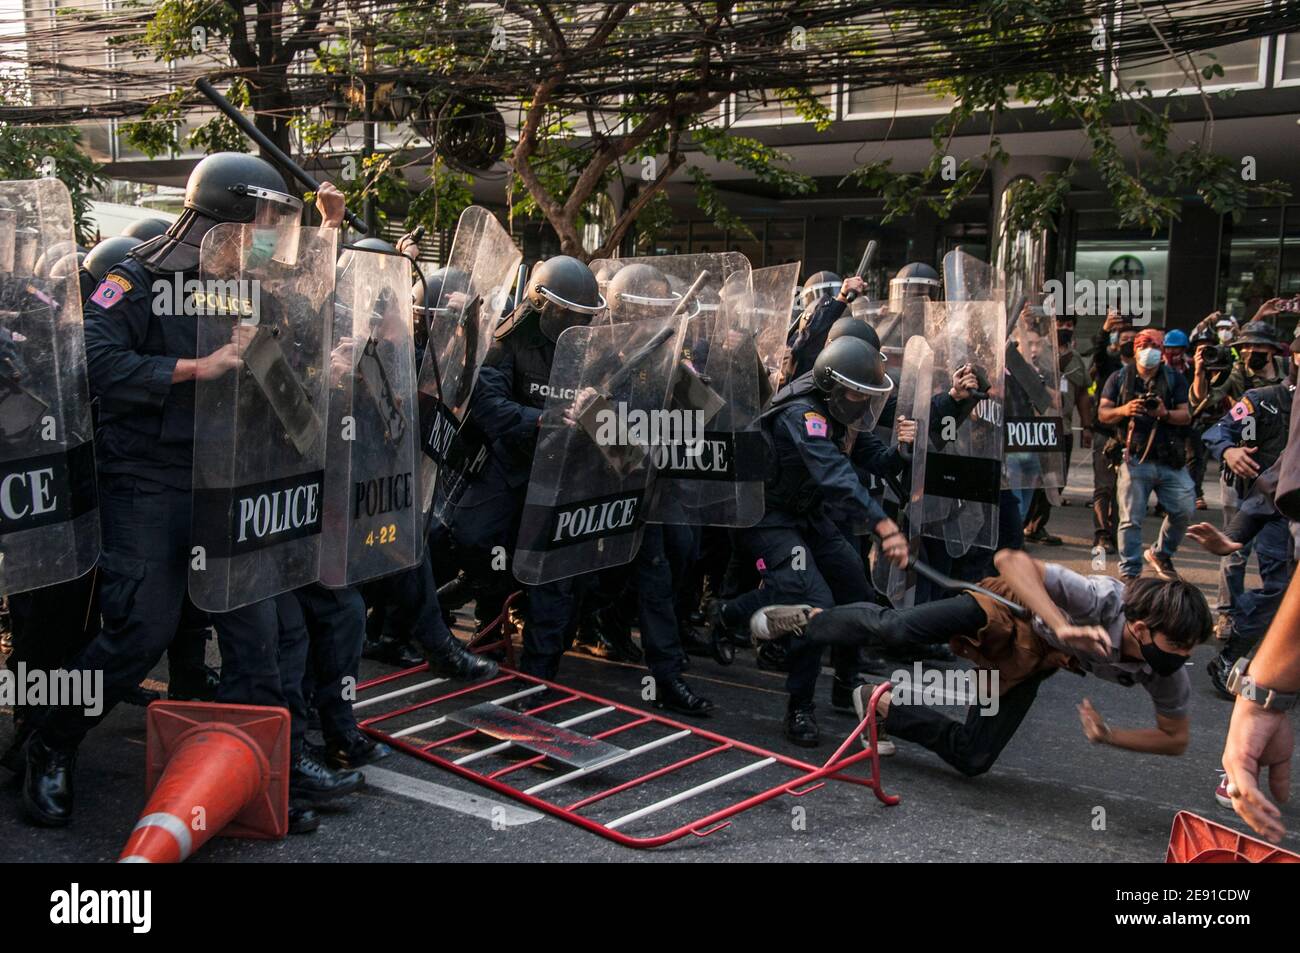 La polizia di Riot si scontra con i manifestanti durante la manifestazione.la polizia di Riot thailandese disperde i manifestanti anti anti-colpo di stato e i sostenitori della Lega nazionale della democrazia (NLD) riuniti all'ambasciata del Myanmar per protestare contro il colpo di stato militare del Myanmar a Bangkok. Foto Stock